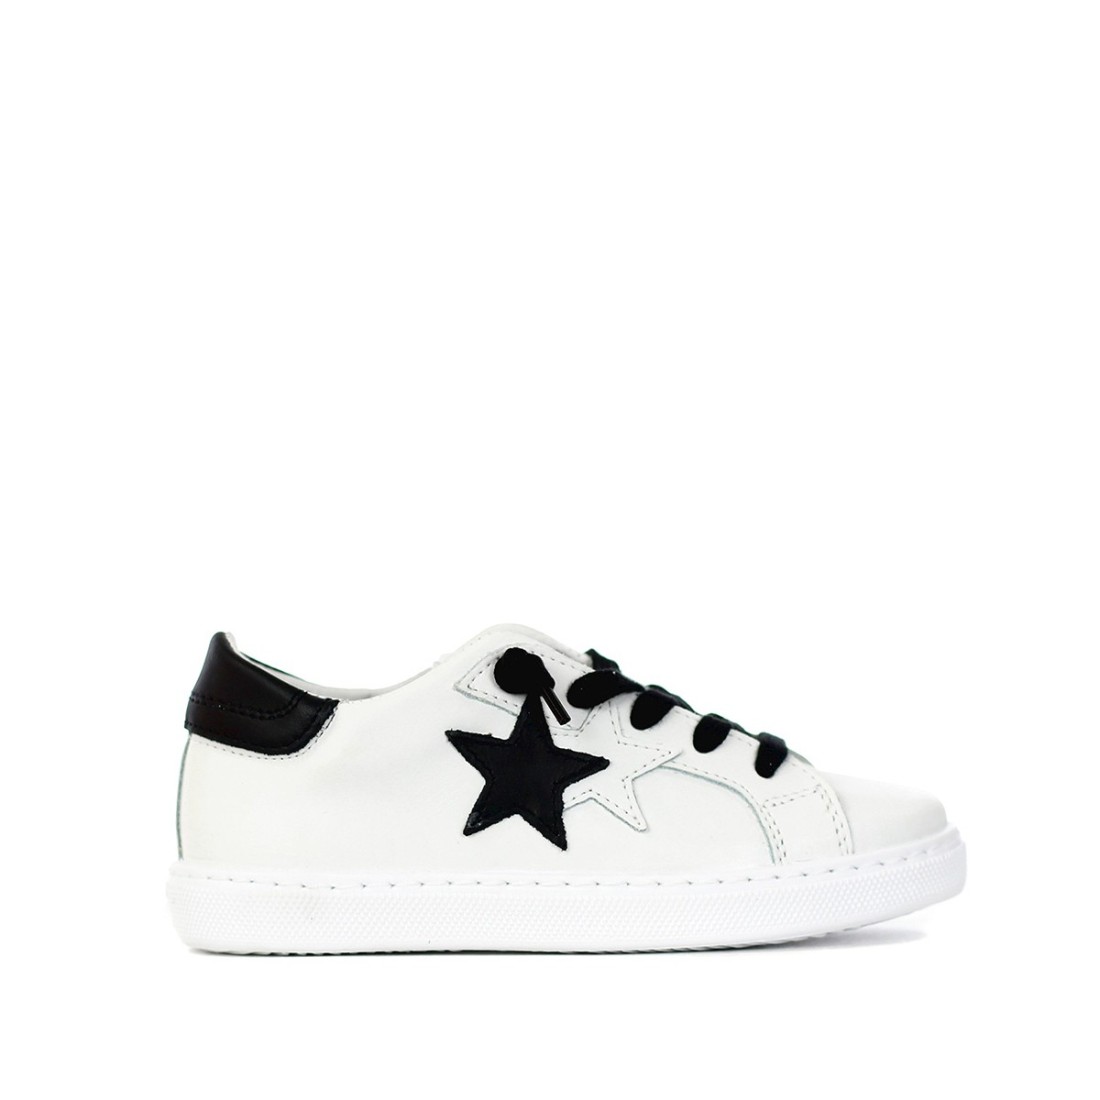 Image of 2STAR - Sneakers - Colore: Bianco,Taglia: 35